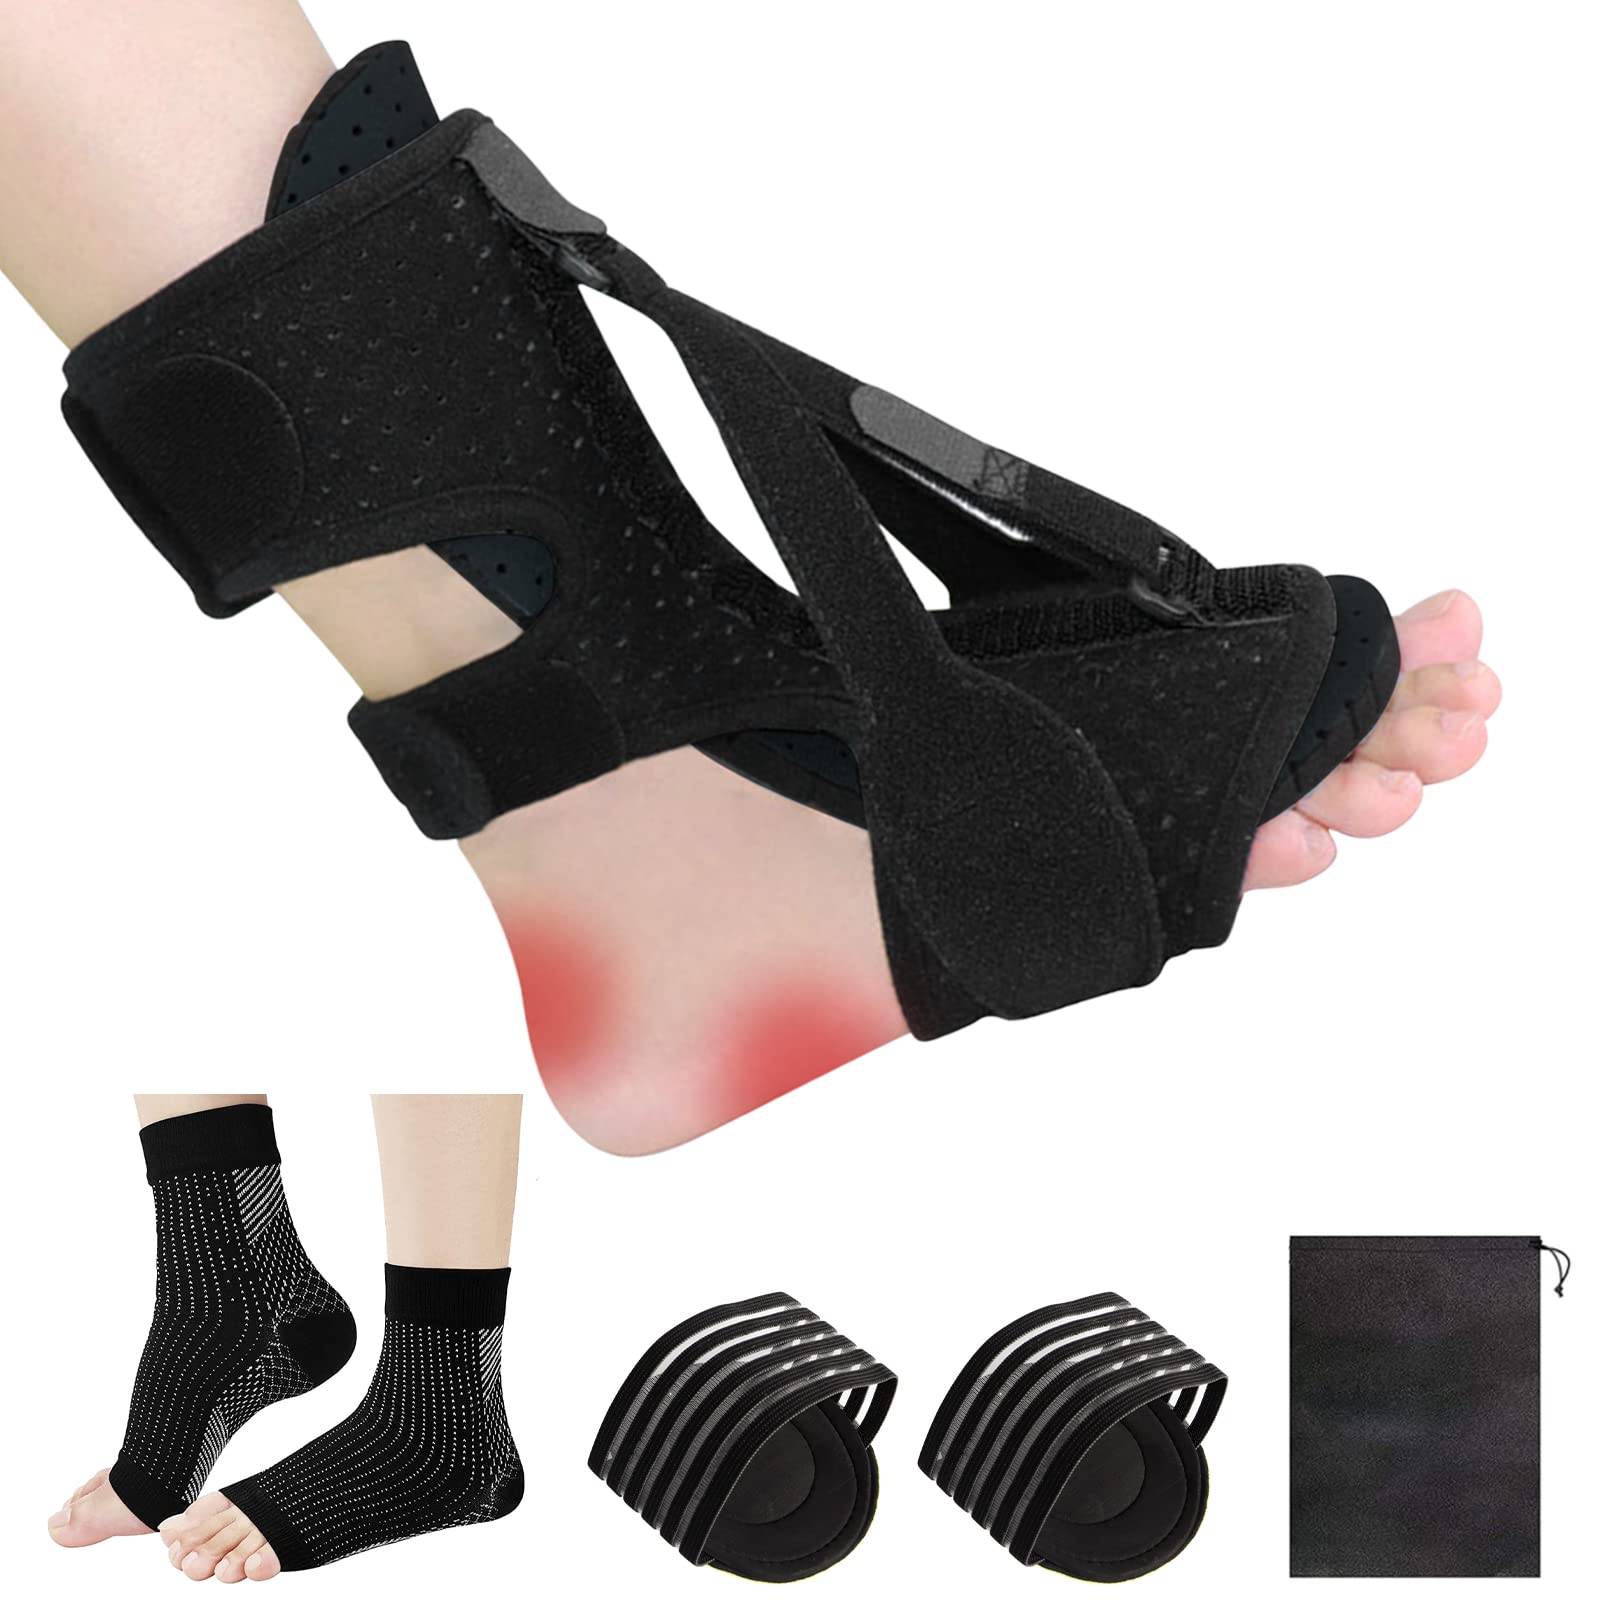 Plantar Fasciitis Night Splint Adjustable Foot Orthotic Brace